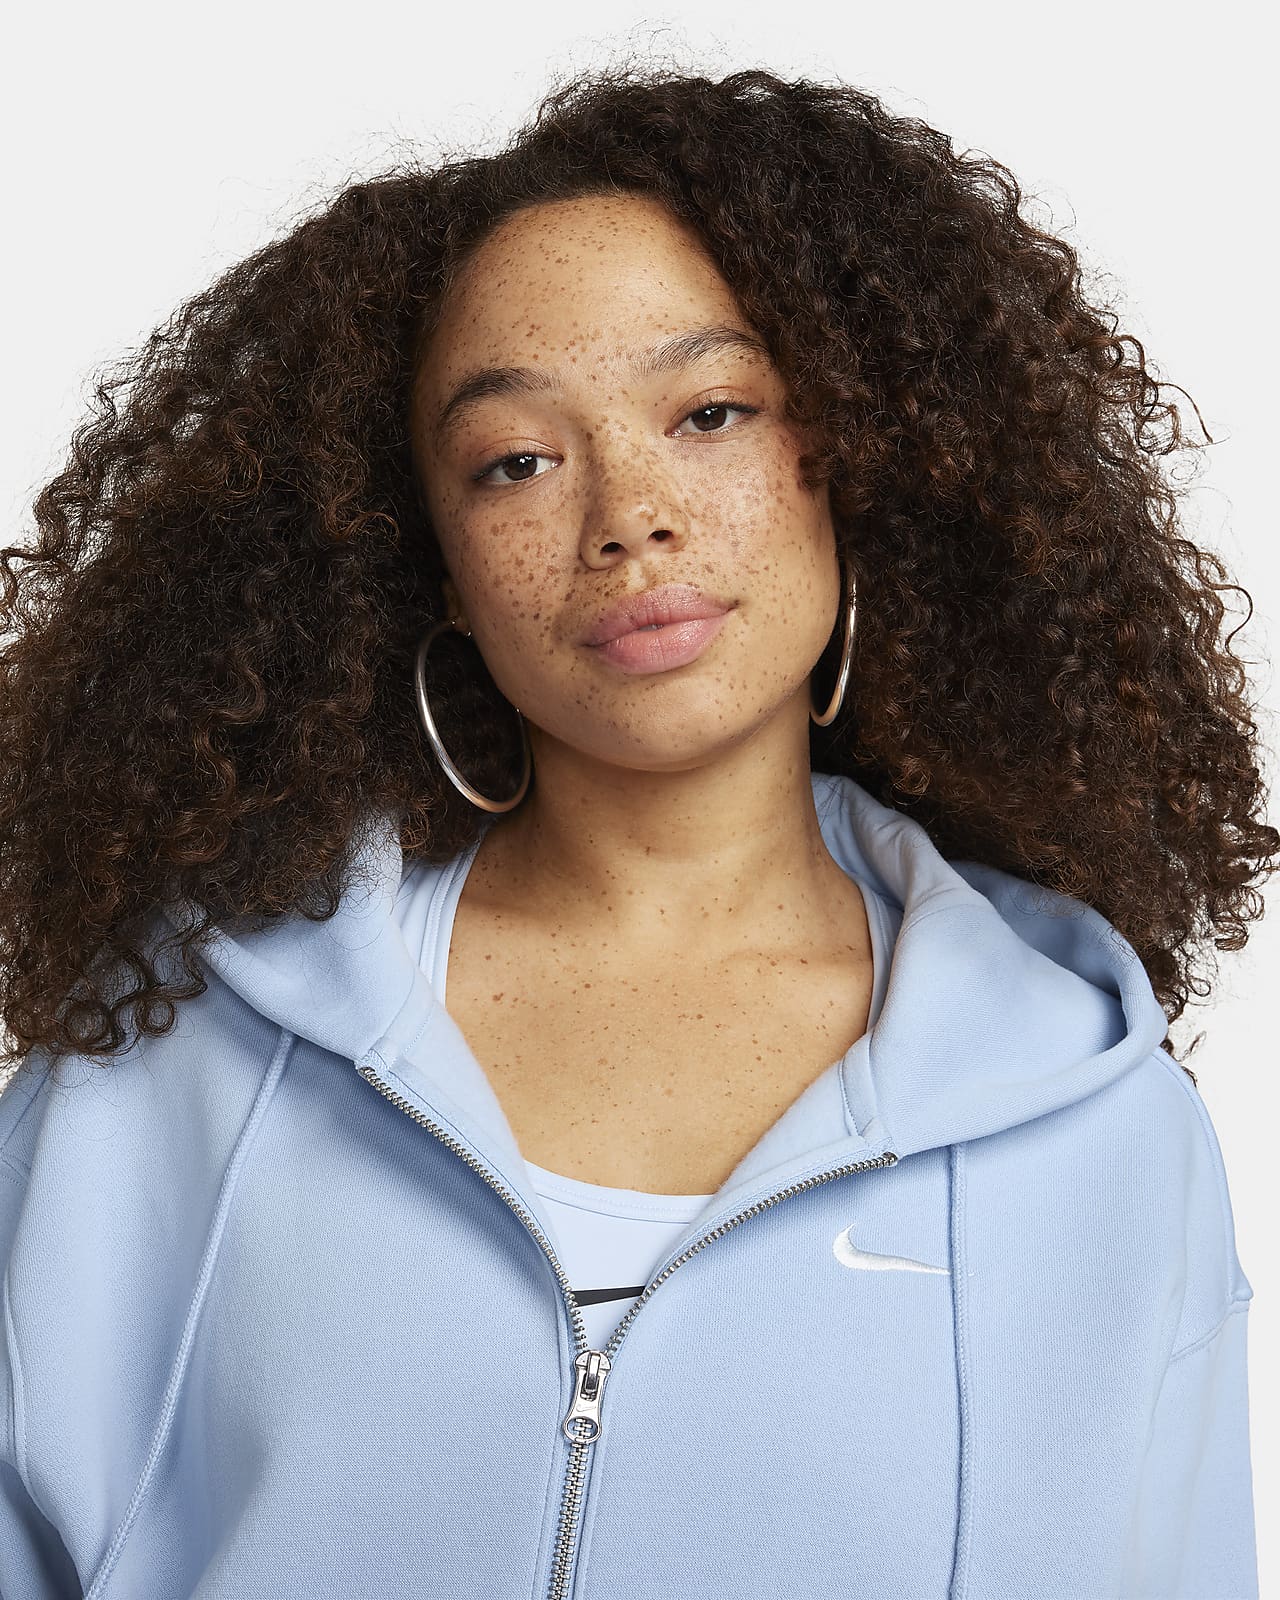 NIKE Women's Nike Sportswear Phoenix Fleece Oversized Full-Zip